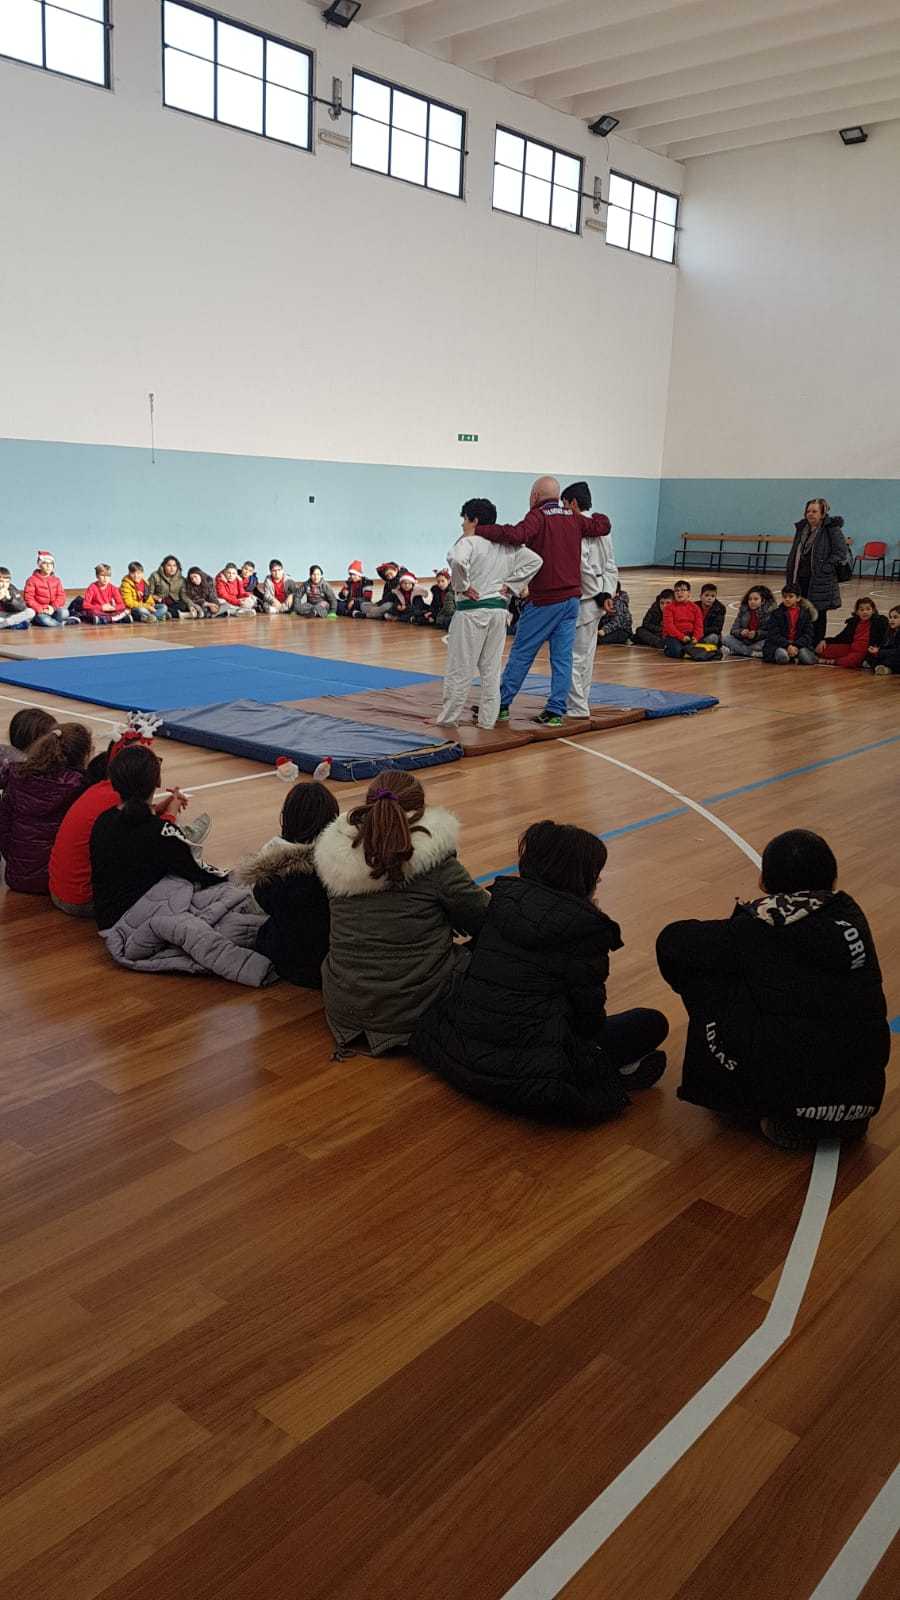 Polizia di Stato. Apre a Catanzaro una Sezione Giovanile delle FF.OO. con la disciplina del Judo